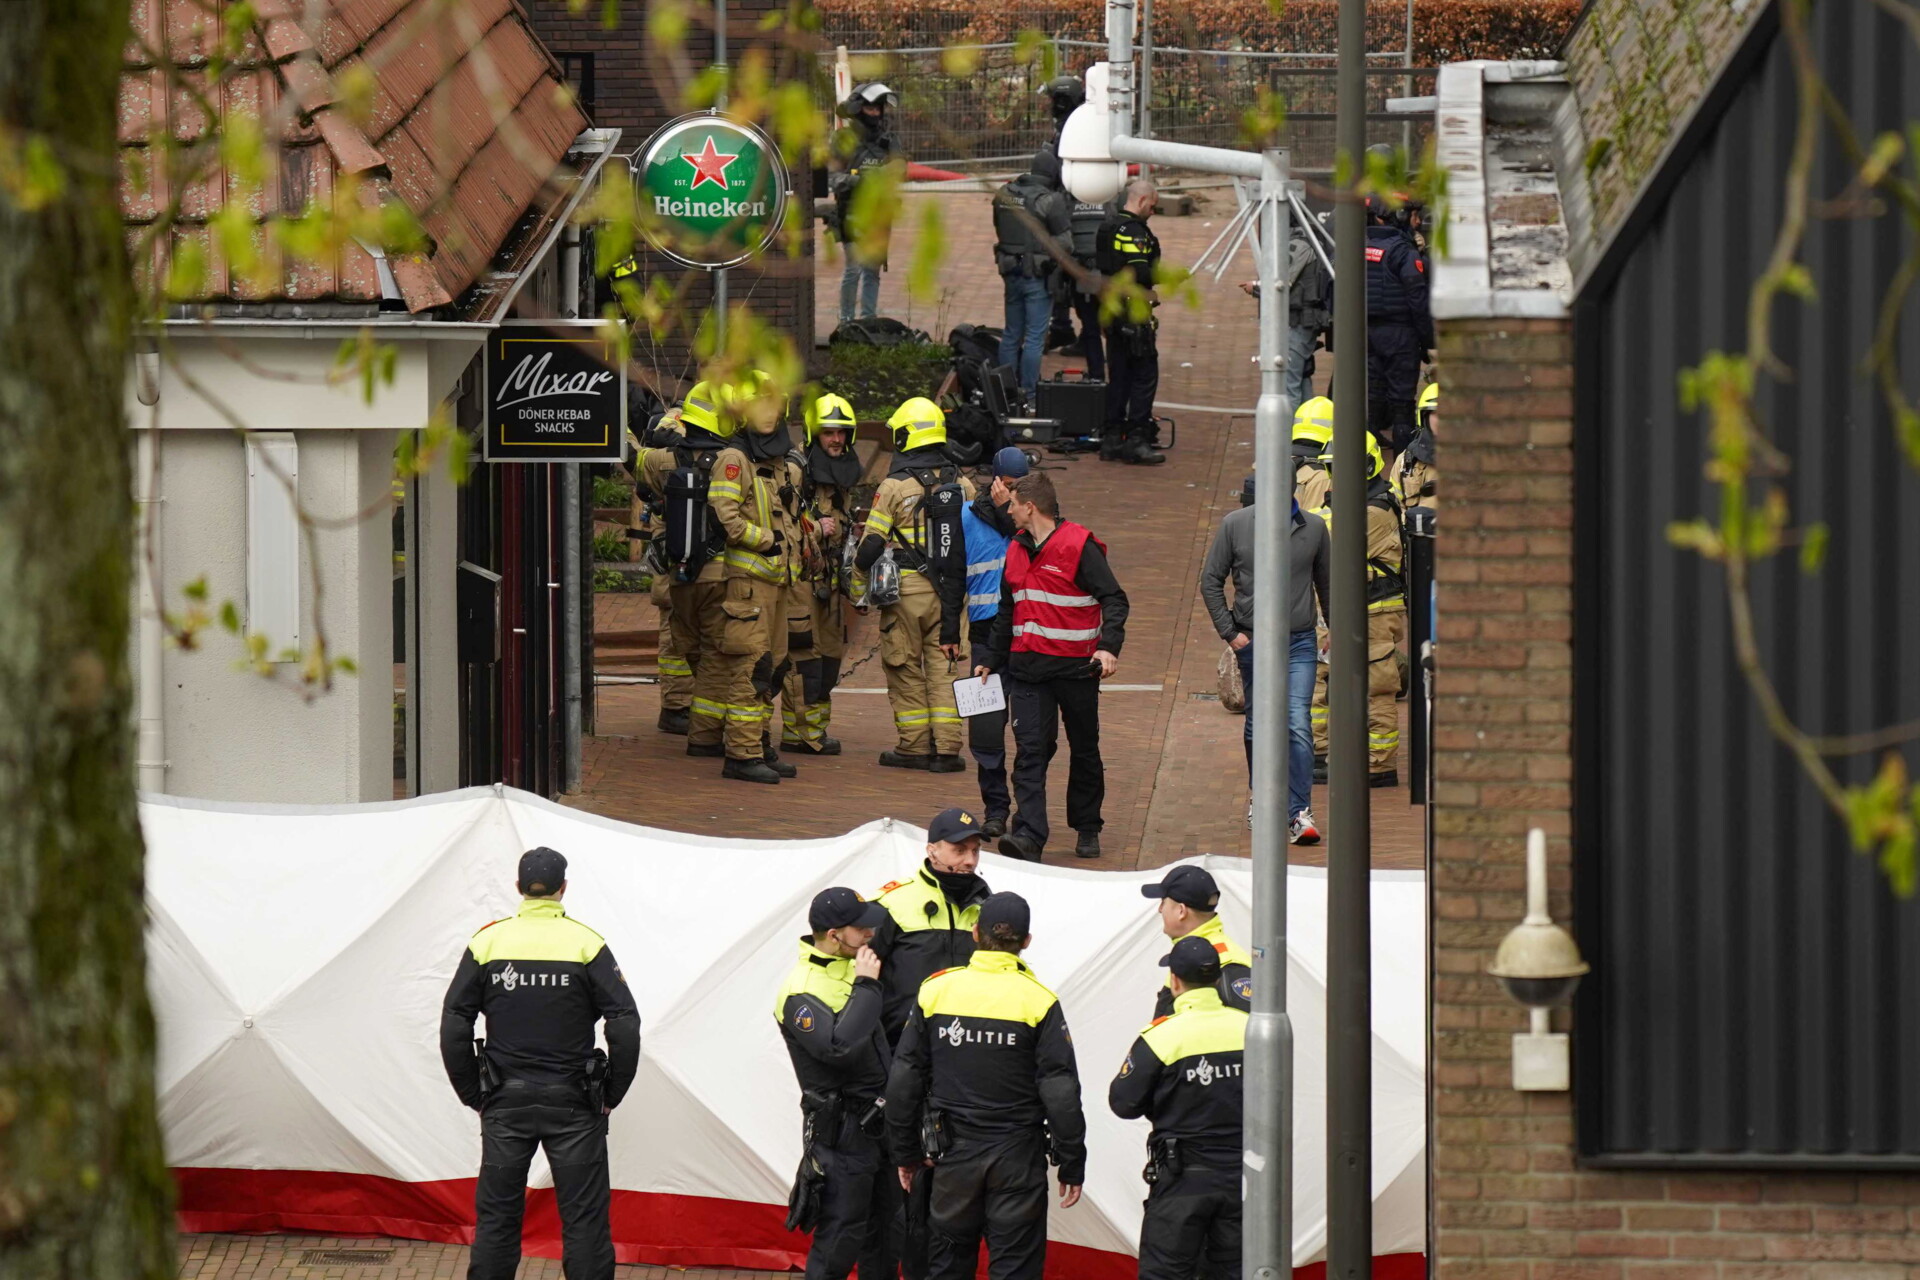 Αστυνομικοί περικύκλωσαν το μπαρ στην Ολλανδία, όπου κρατούνταν οι όμηροι © EPA/PERSBUREAU HEITINK